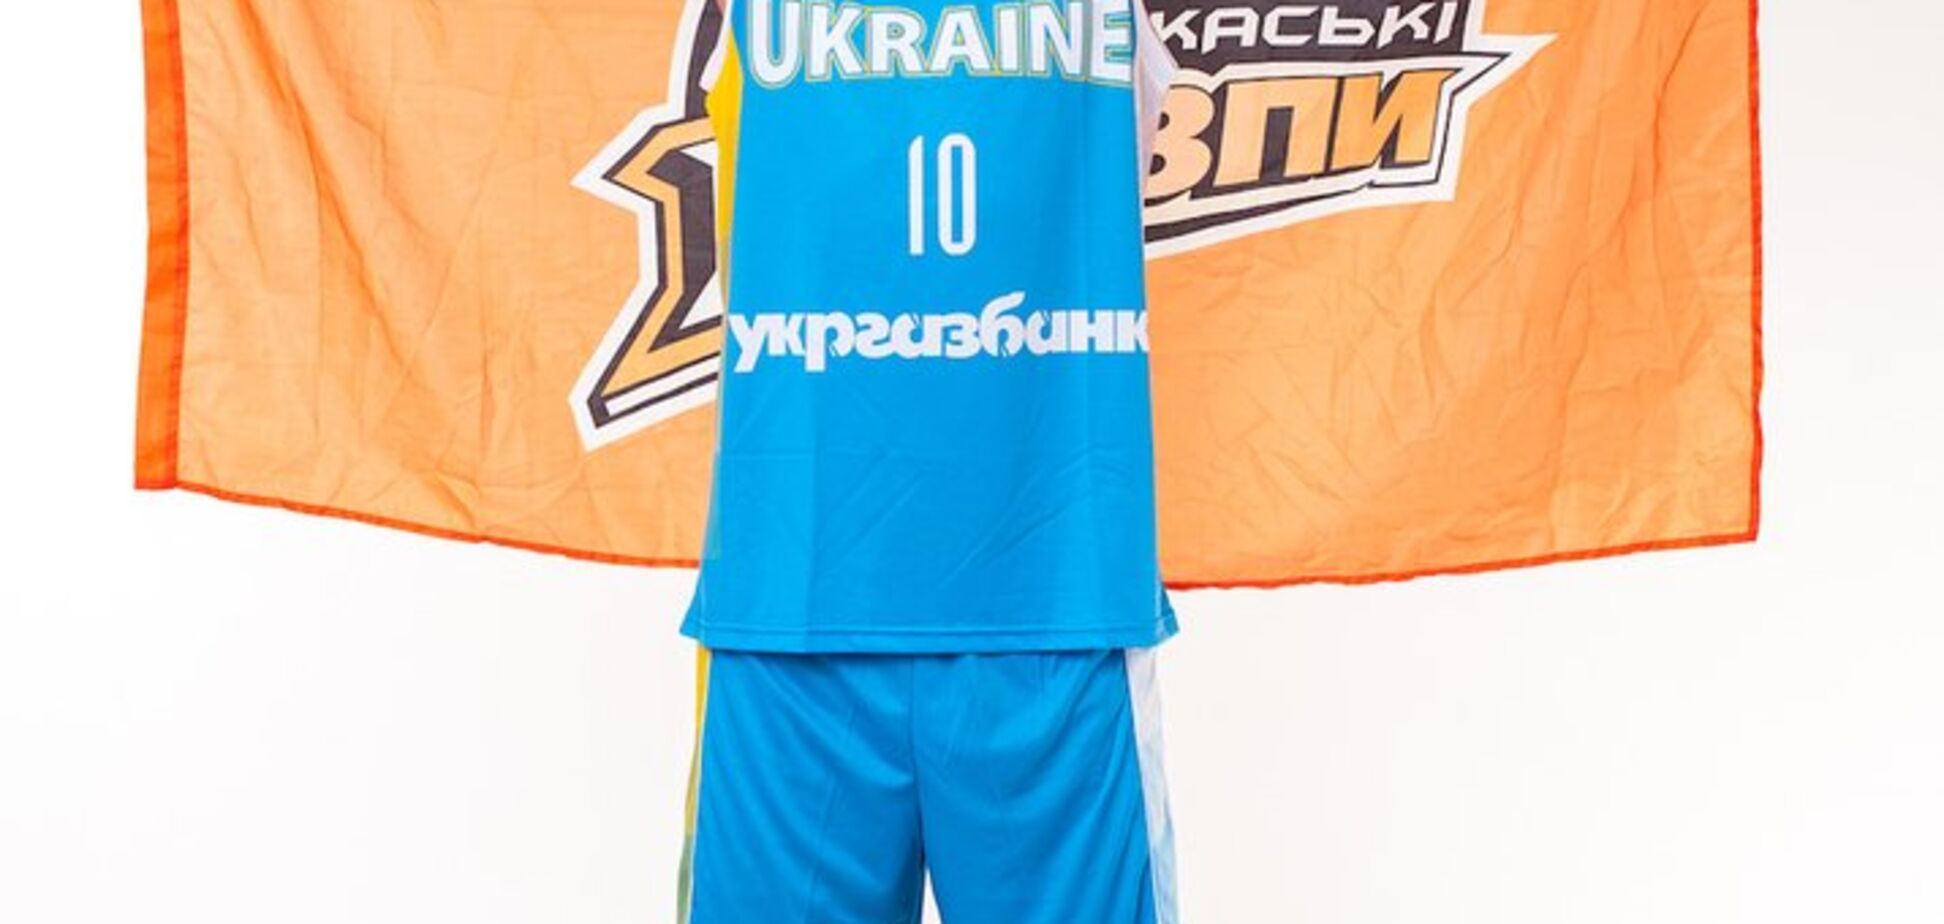 НБА в Украине: Михайлюк и Лэнь примерили форму сборной - яркие фото